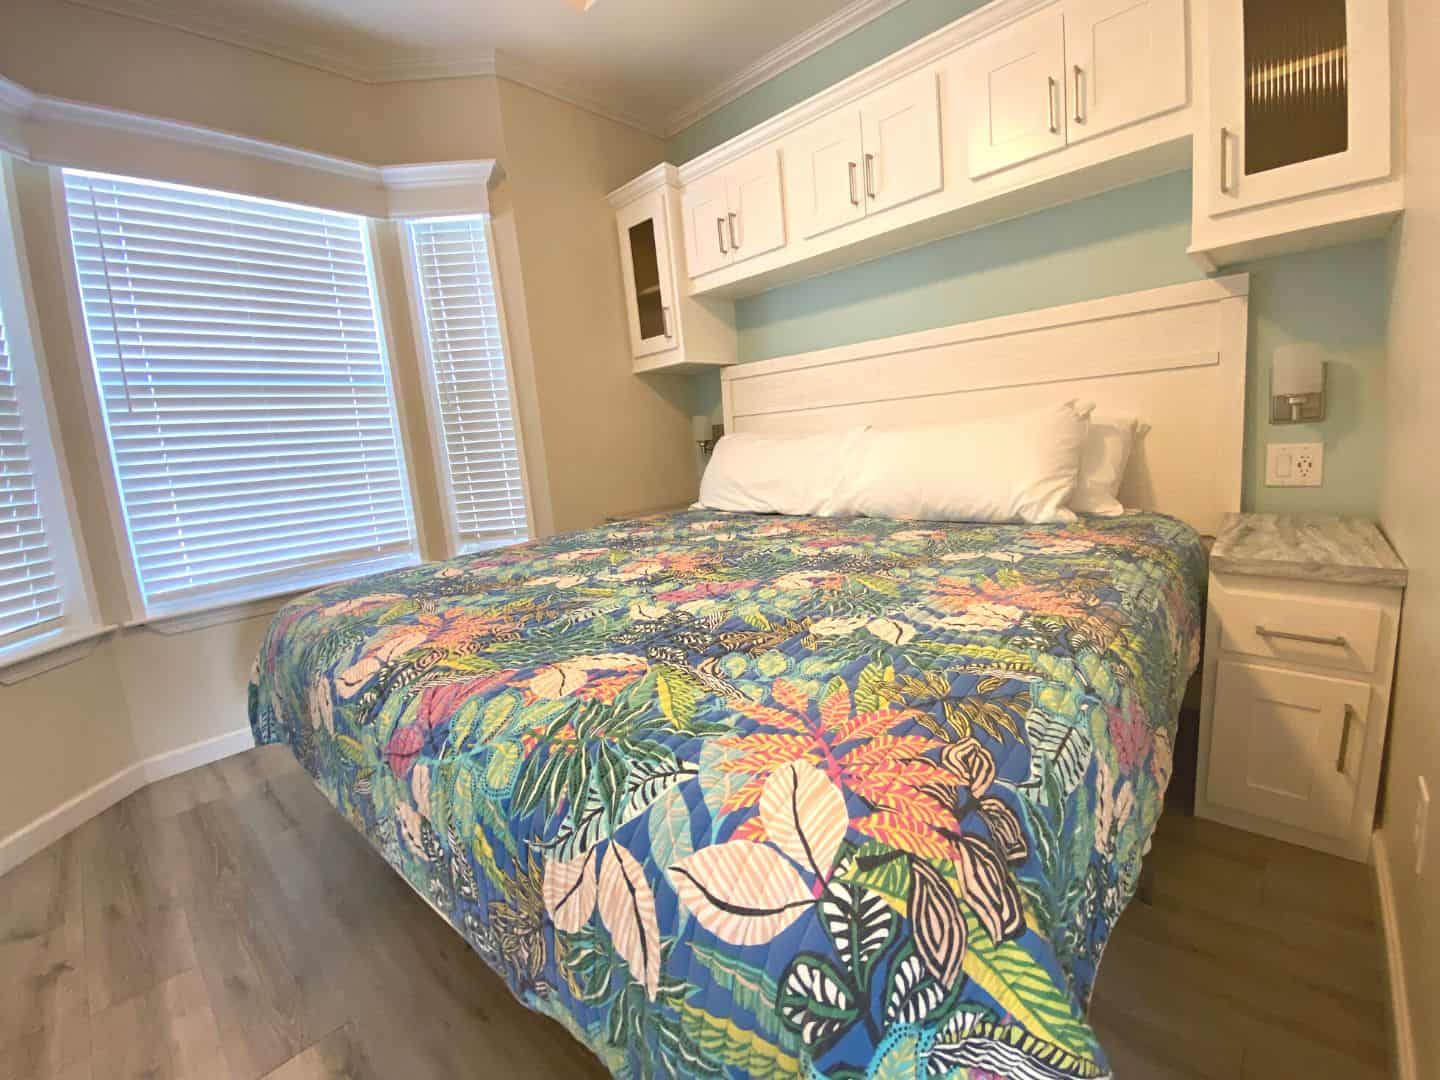 Bedroom of Cabin at Camp Margaritaville 2022